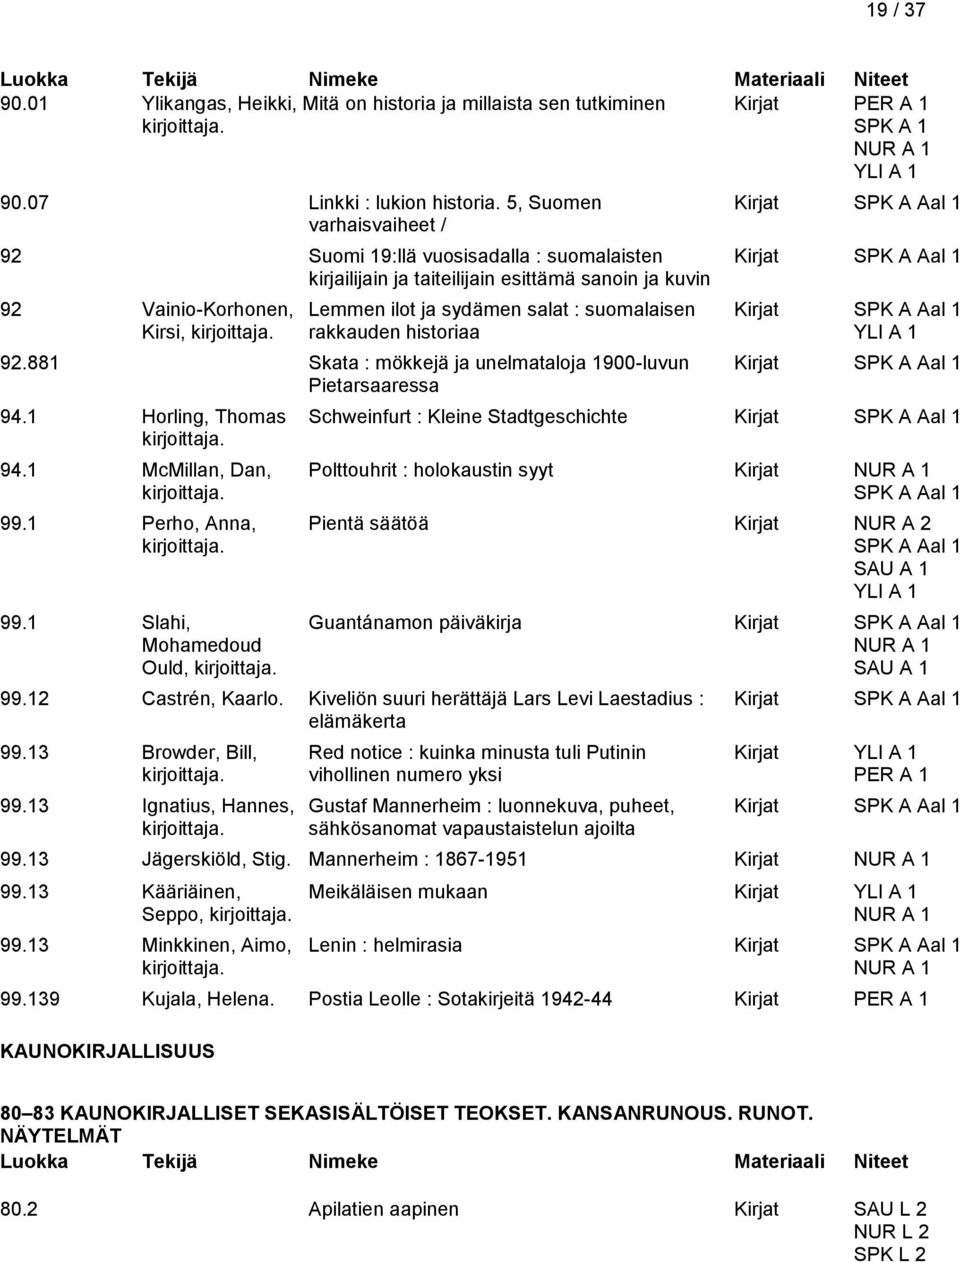 sydämen salat : suomalaisen Kirjat SPK A Aal 1 Kirsi, rakkauden historiaa 92.881 Skata : mökkejä ja unelmataloja 1900-luvun Kirjat SPK A Aal 1 Pietarsaaressa 94.